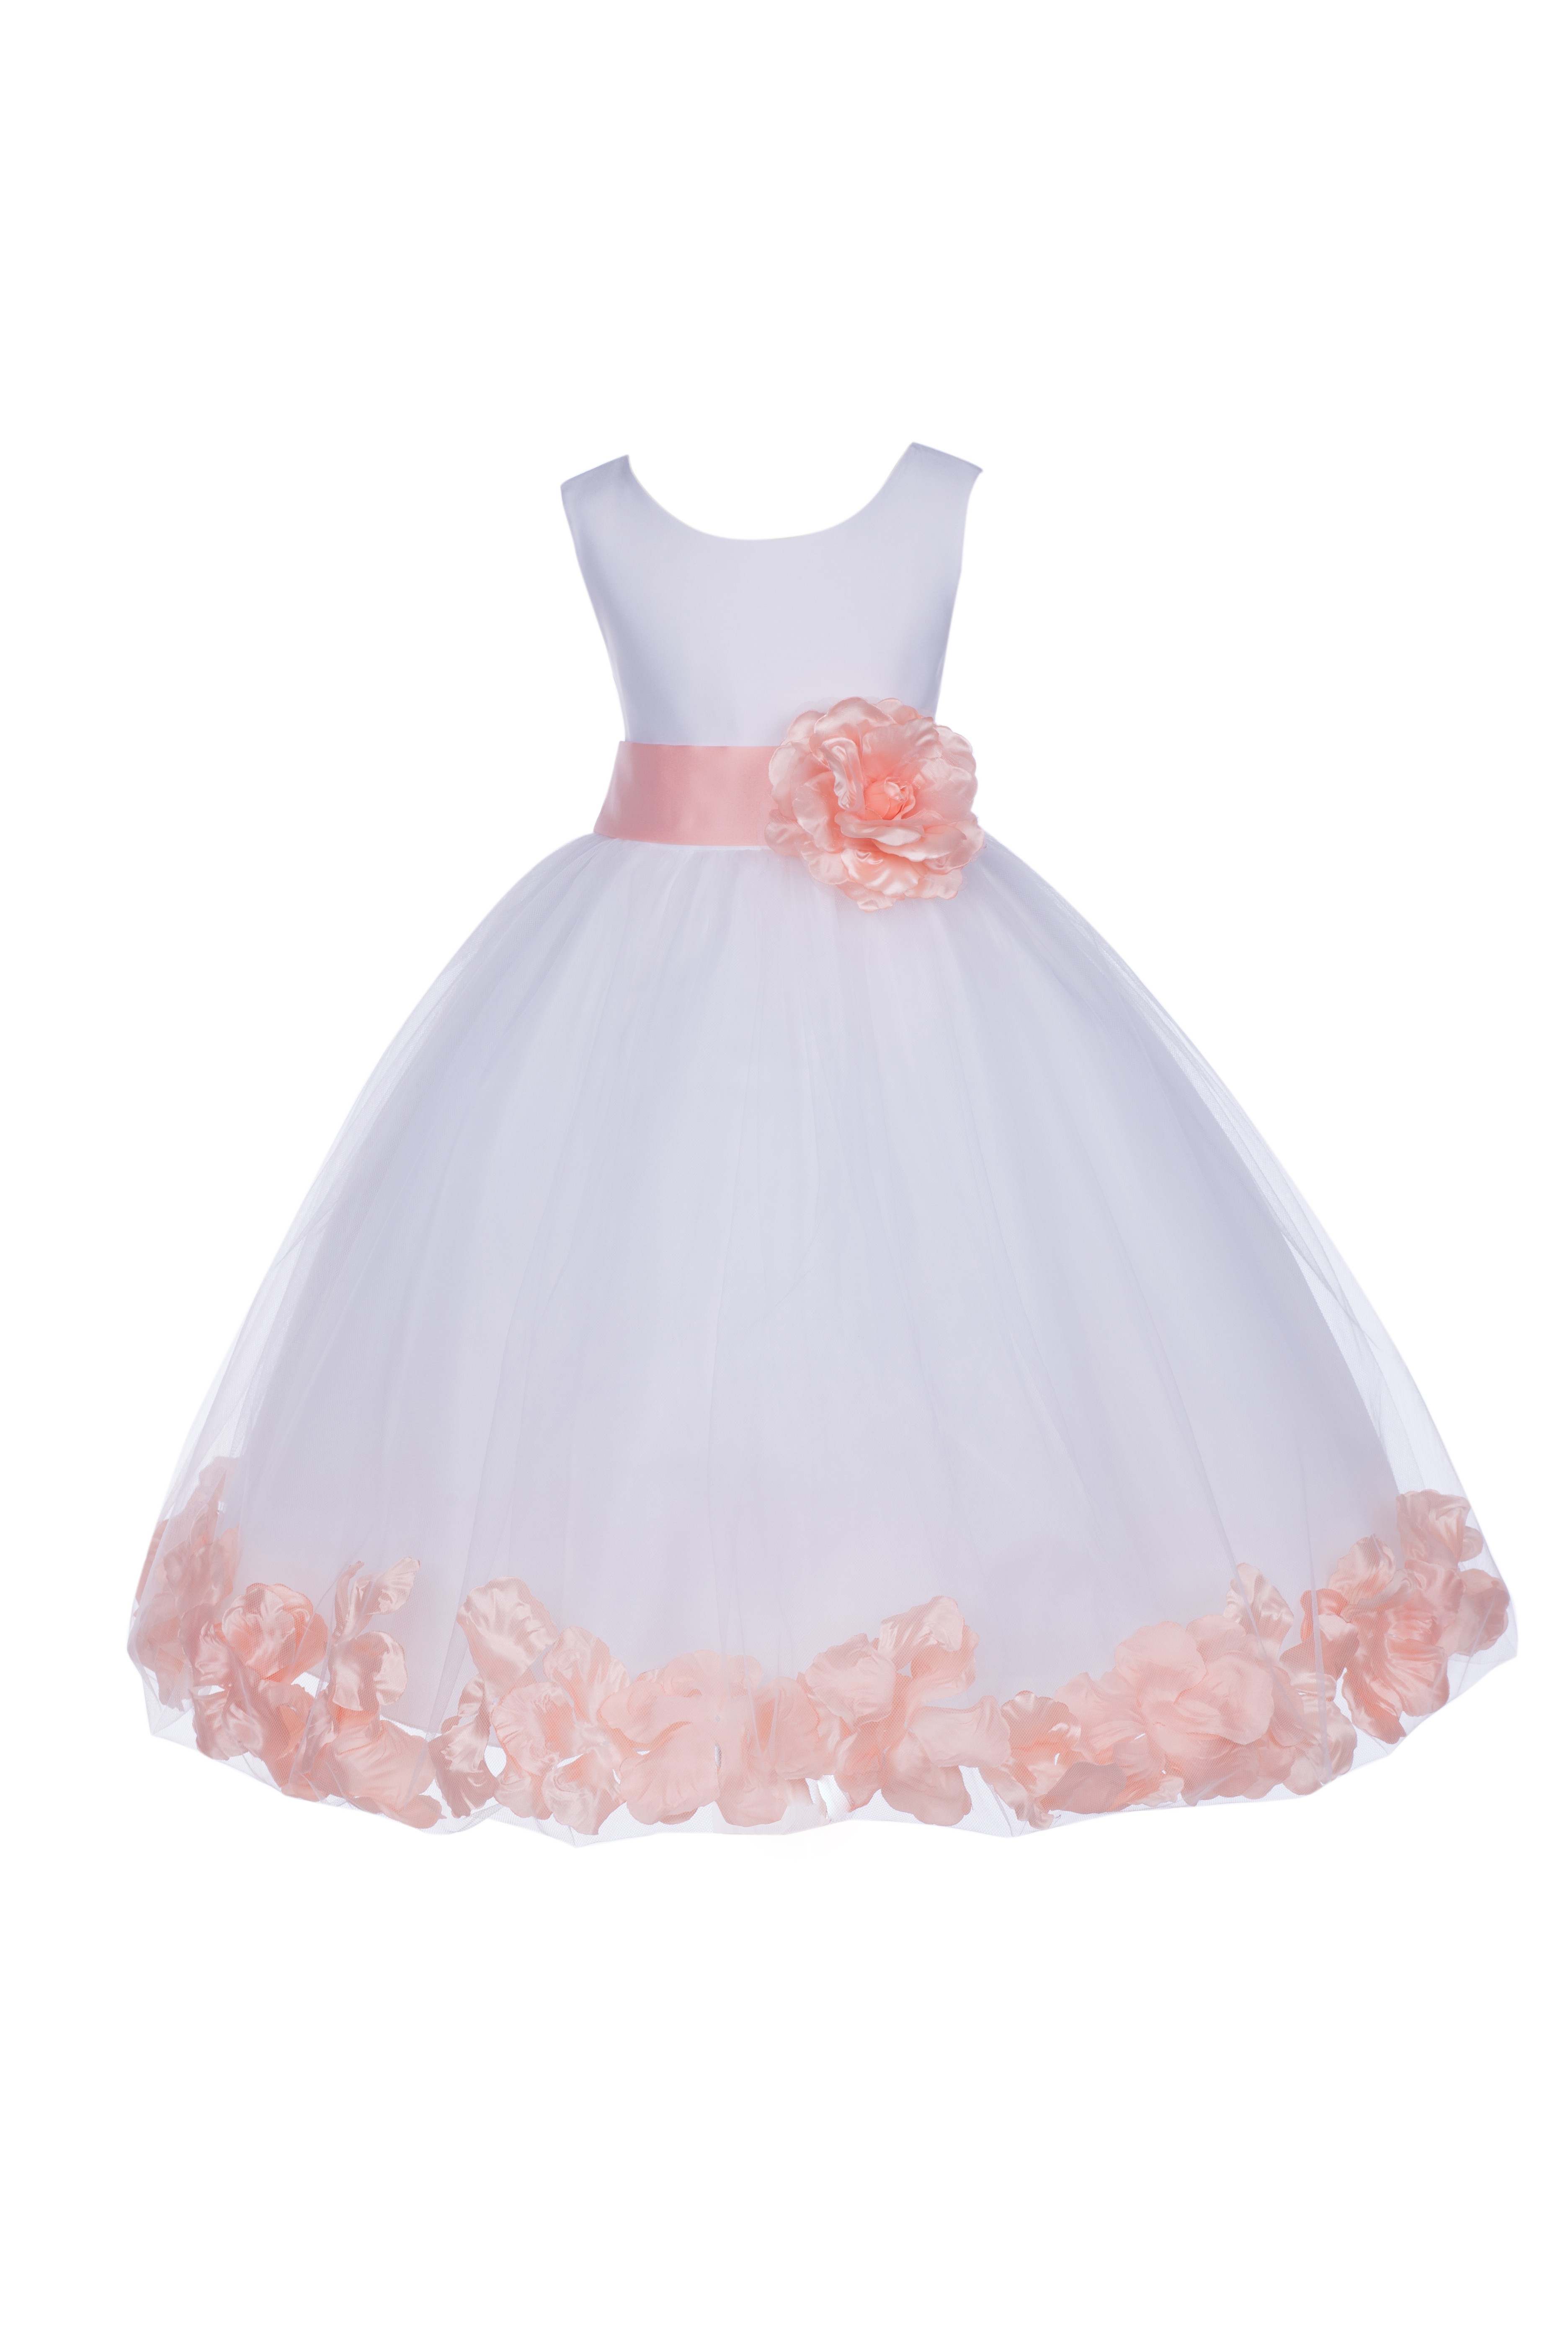 White/Peach Tulle Rose Petals Flower Girl Dress Wedding 302S